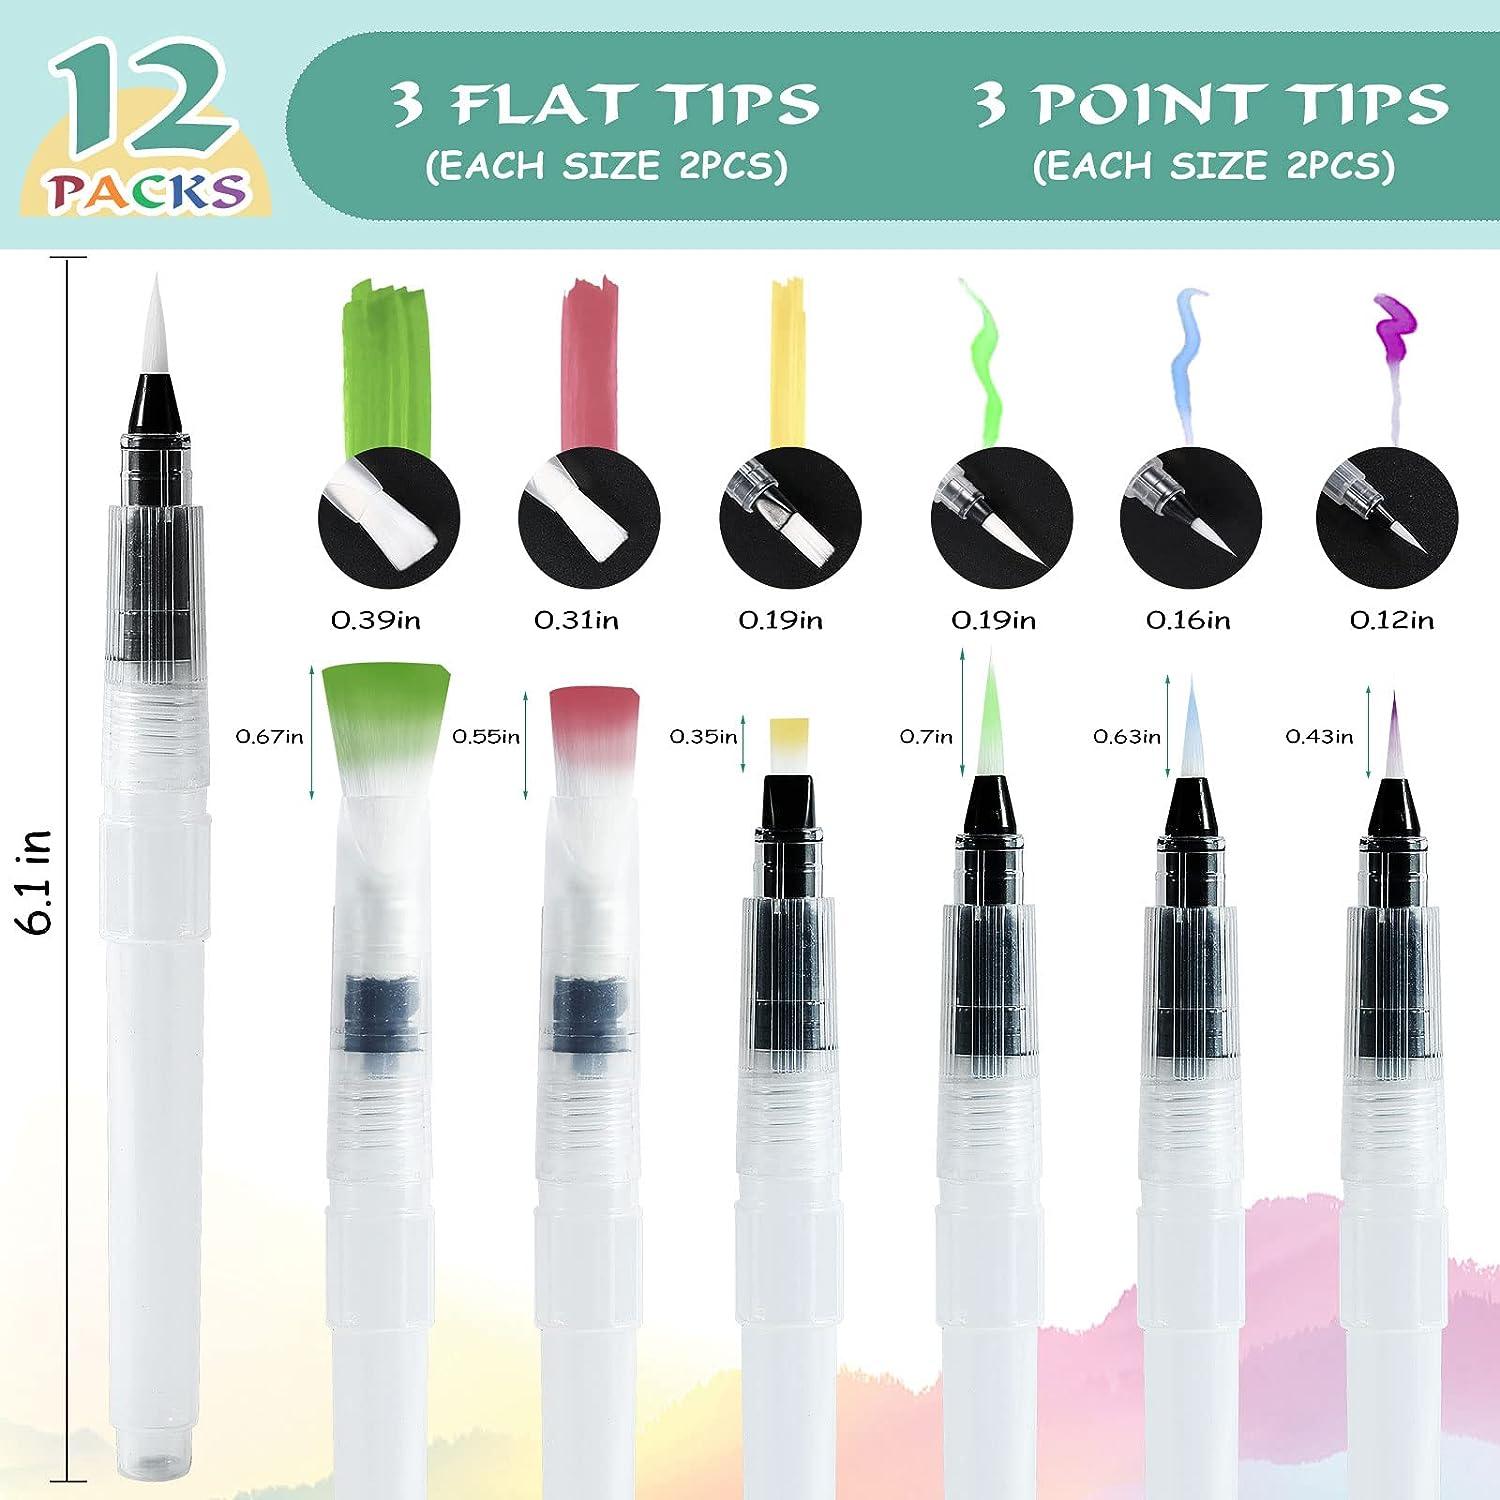 Junreox 12Pcs Watercolor Brush Pens Premium Water Brush Pen